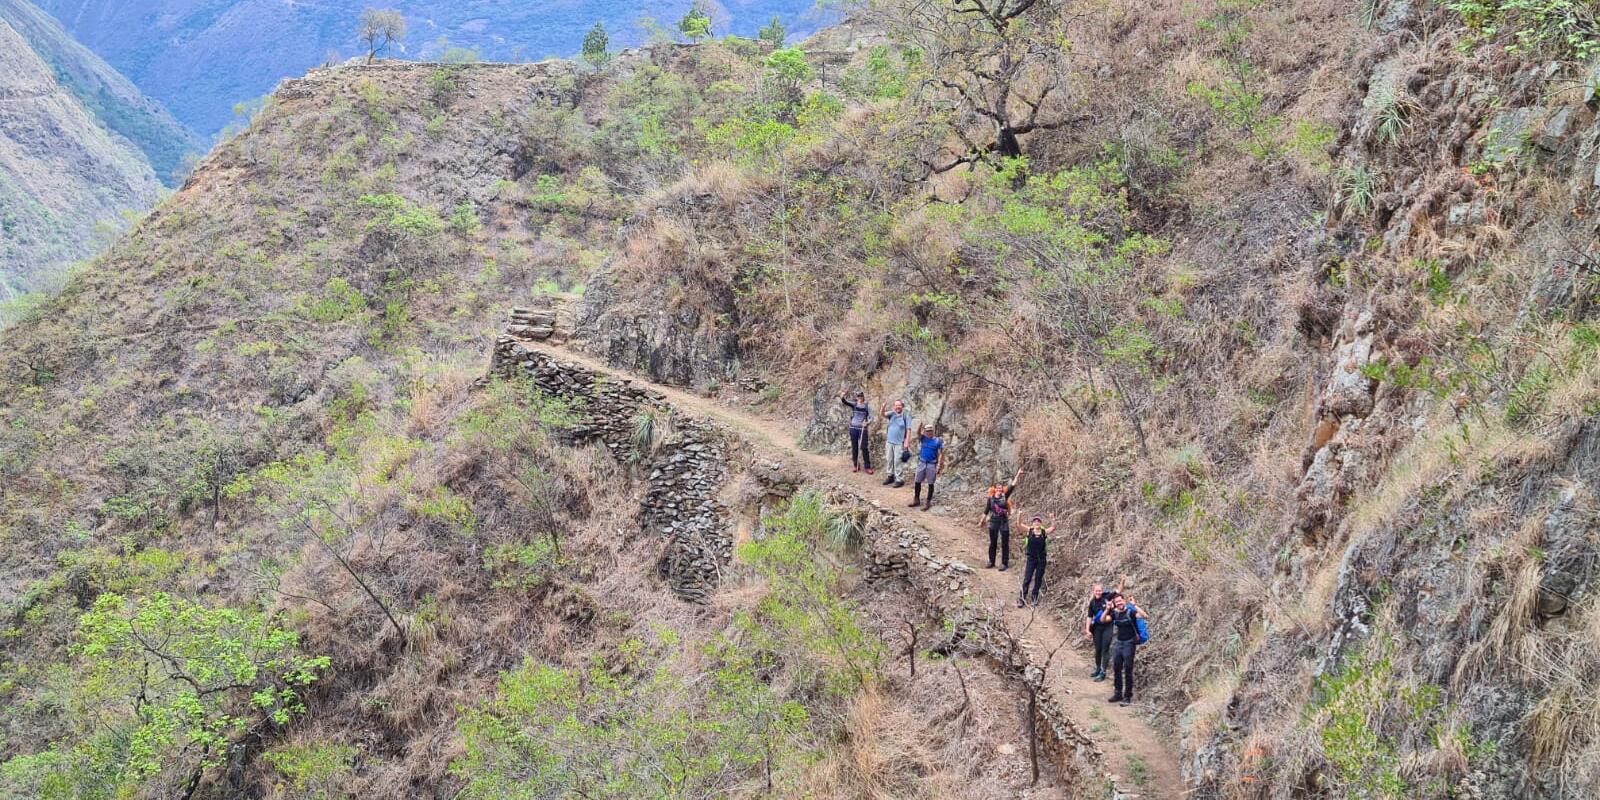 Inca Trail group hike in Peru